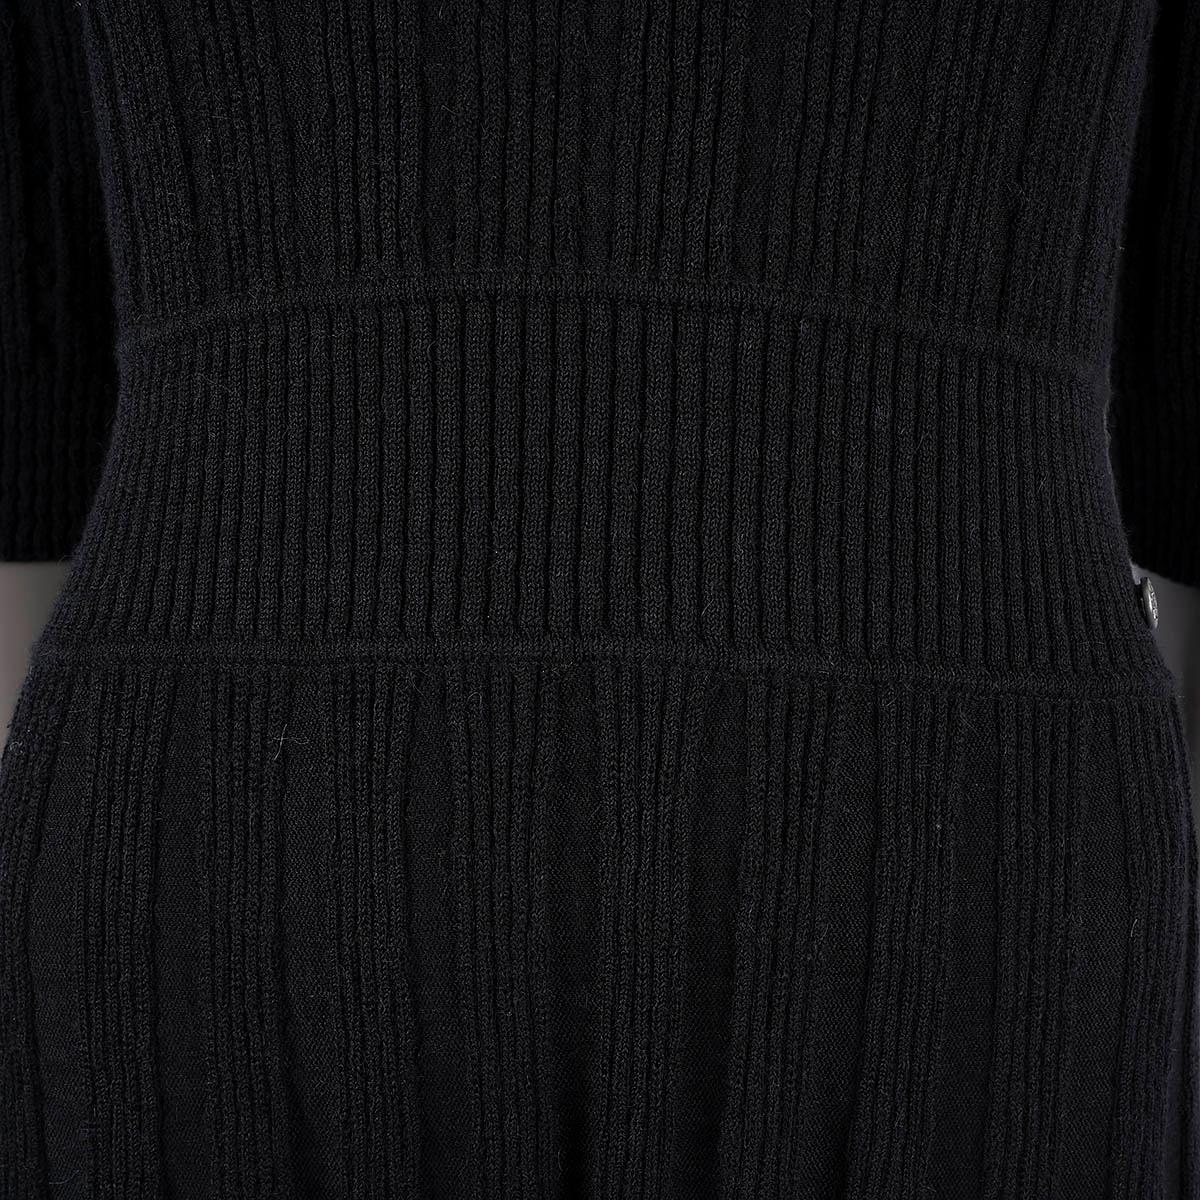 CHANEL black alpaca & wool 2018 18B TEXTURED KNIT Dress 40 M For Sale 3